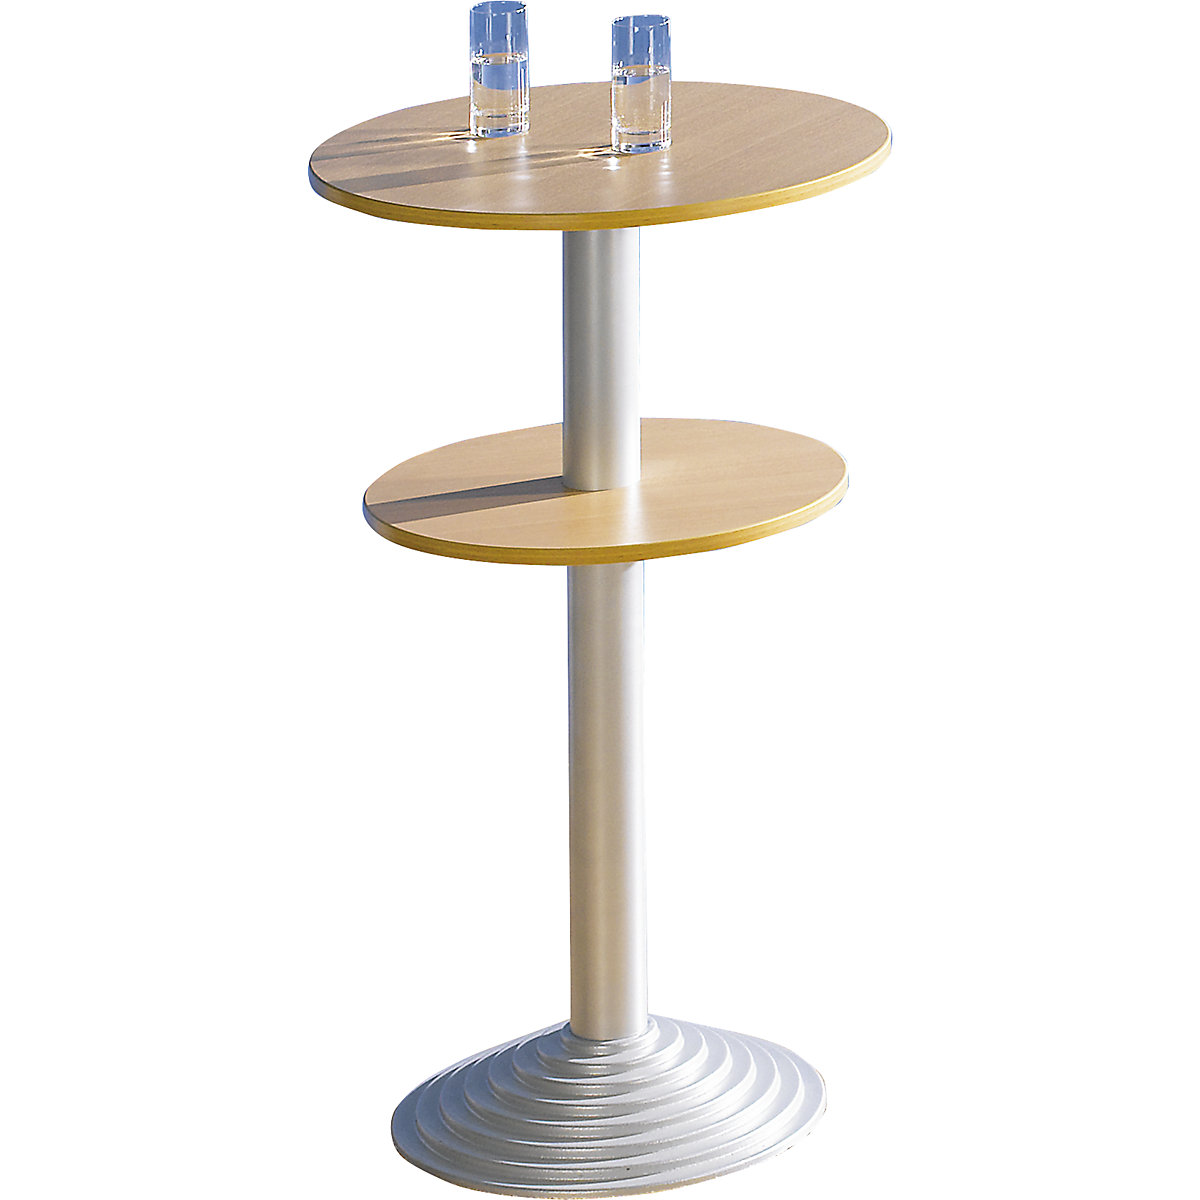 Barski stol s postoljem od lijevanog željeza, 2 ploče stola, razmak 30 cm, imitacija bukve, stup u boji aluminija-3